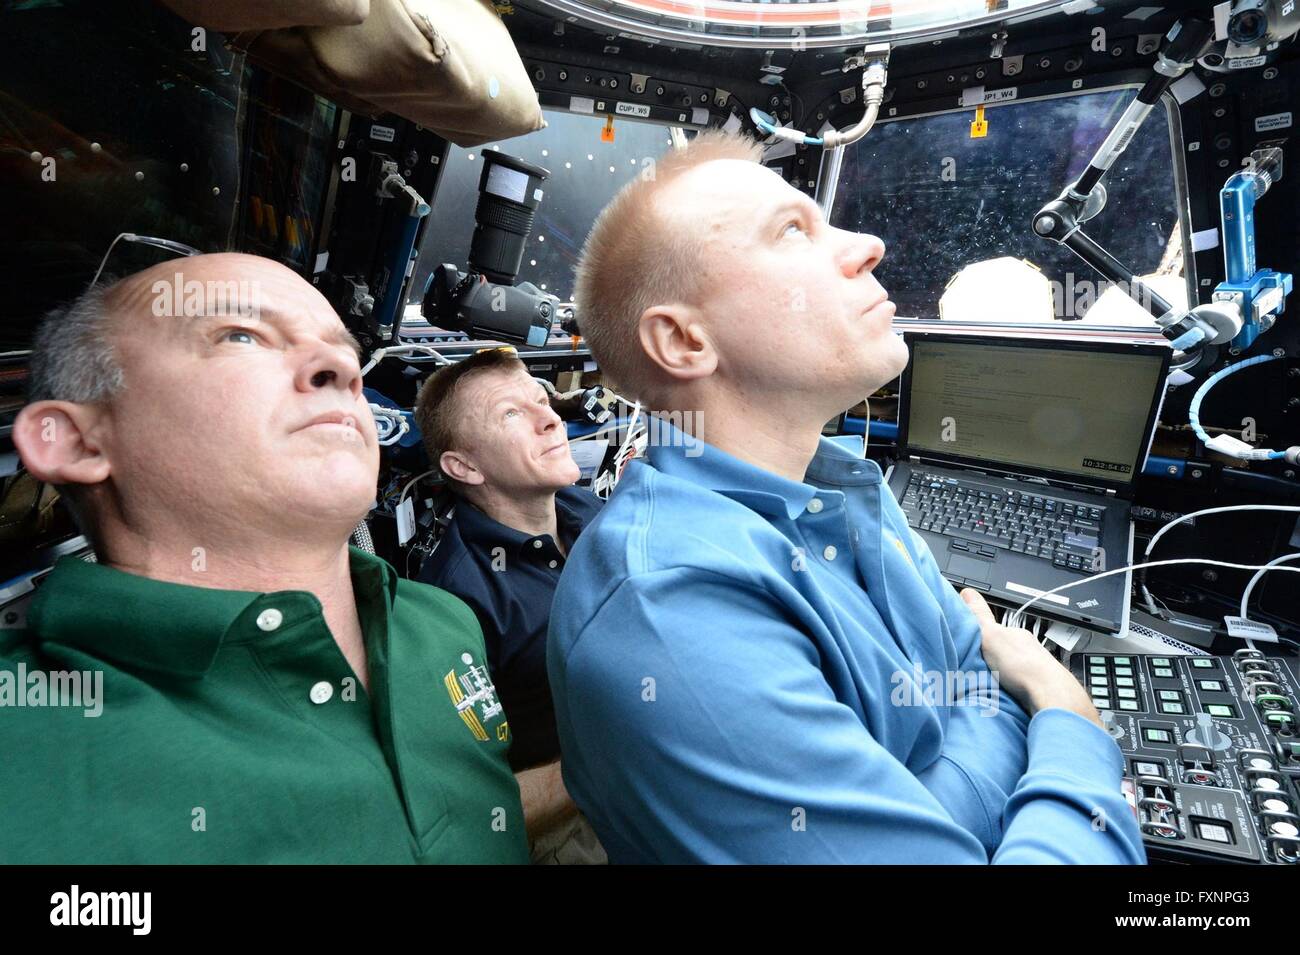 Stazione Spaziale Internazionale Expedition 47 equipaggio guardare come gli orbitali ATK Cygnus spazio capsula cargo è agganciato alla stazione Marzo 26, 2016 in orbita intorno alla terra. Equipaggio da sinistra a destra: astronauta americano Jeff Williams, astronauta britannico Tim Peake e astronauta americano Tim Kopra. Foto Stock